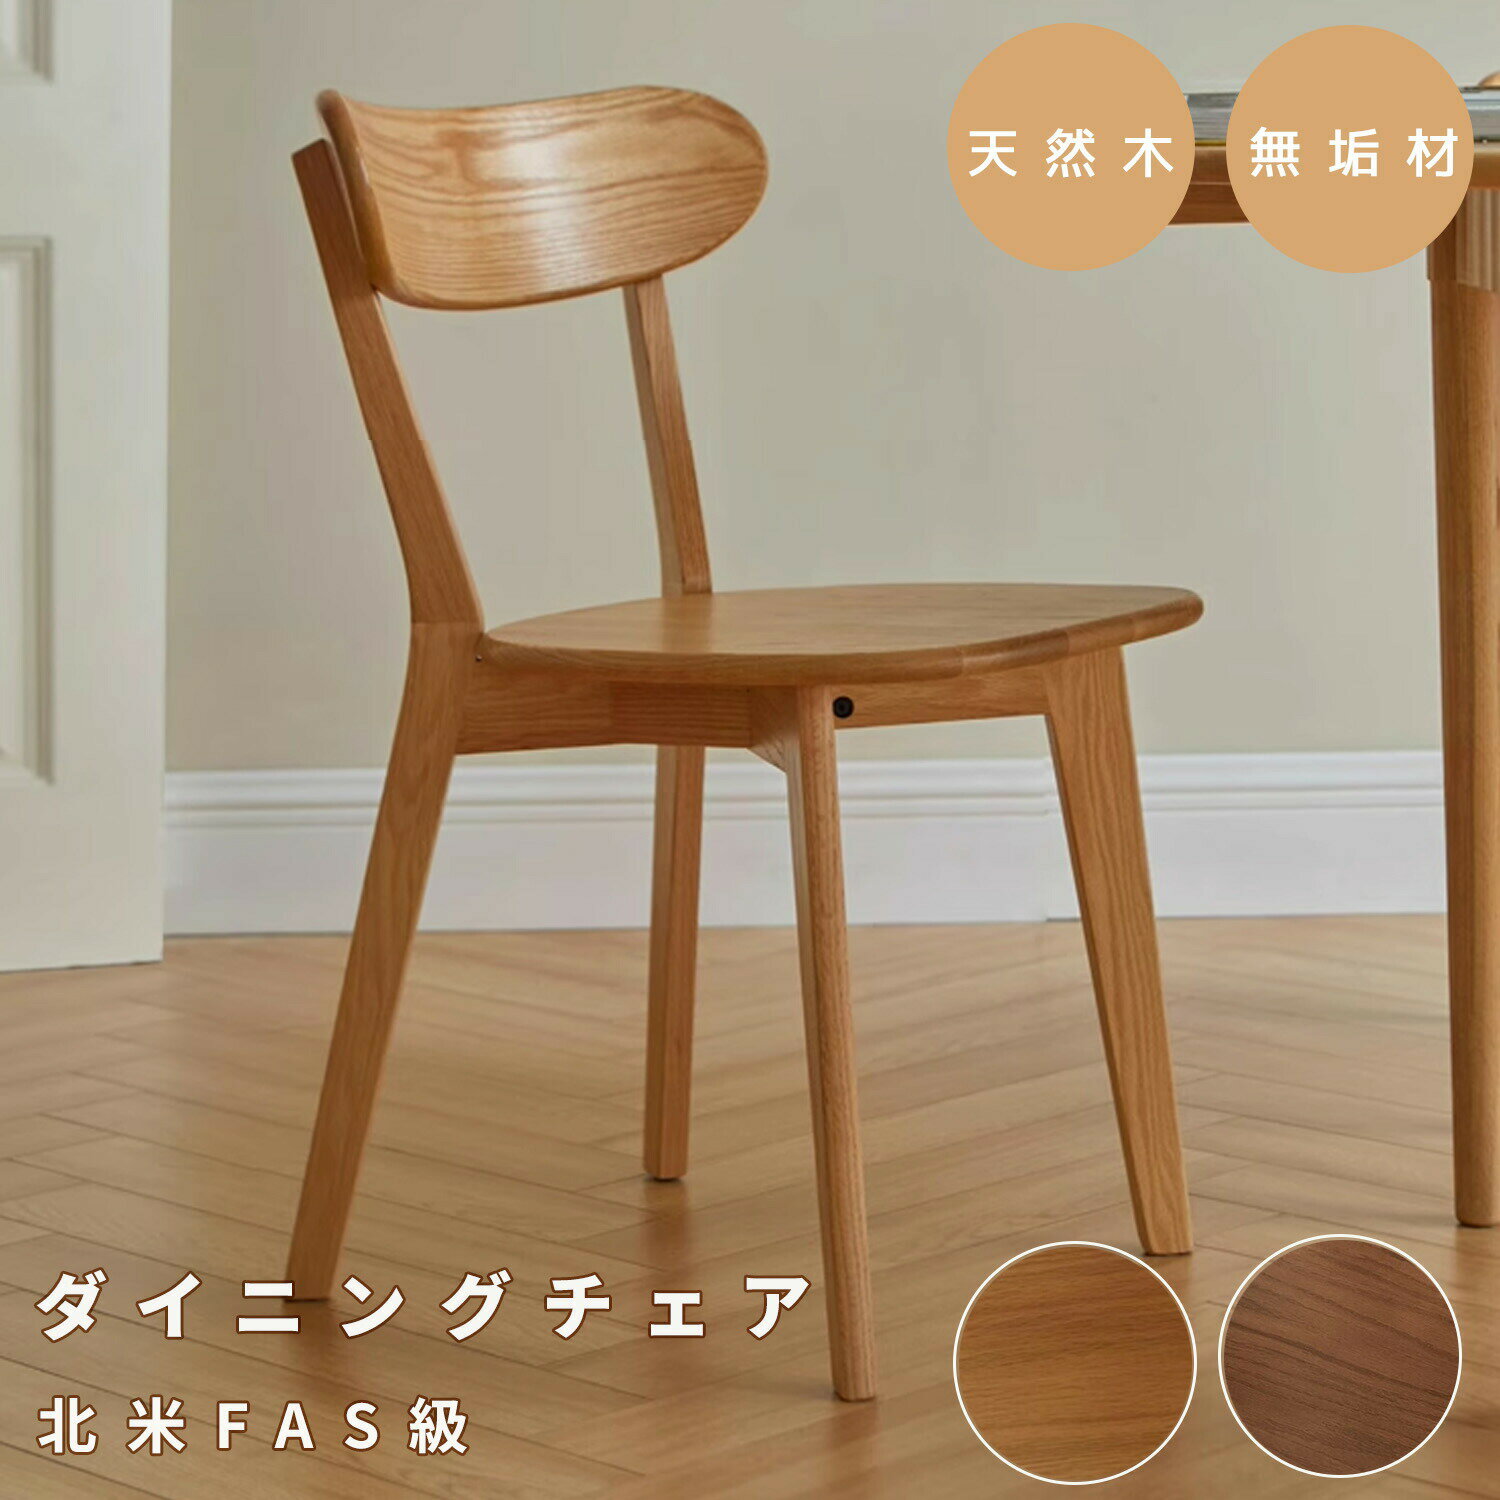 ダイニングチェア 木製 北米産FAS級オーク材 天然木 100％無垢材 チェア 頑丈 イス 食卓椅子 安定性が高い ナチュラル おしゃれ シンプルデザイン WAYSHOME